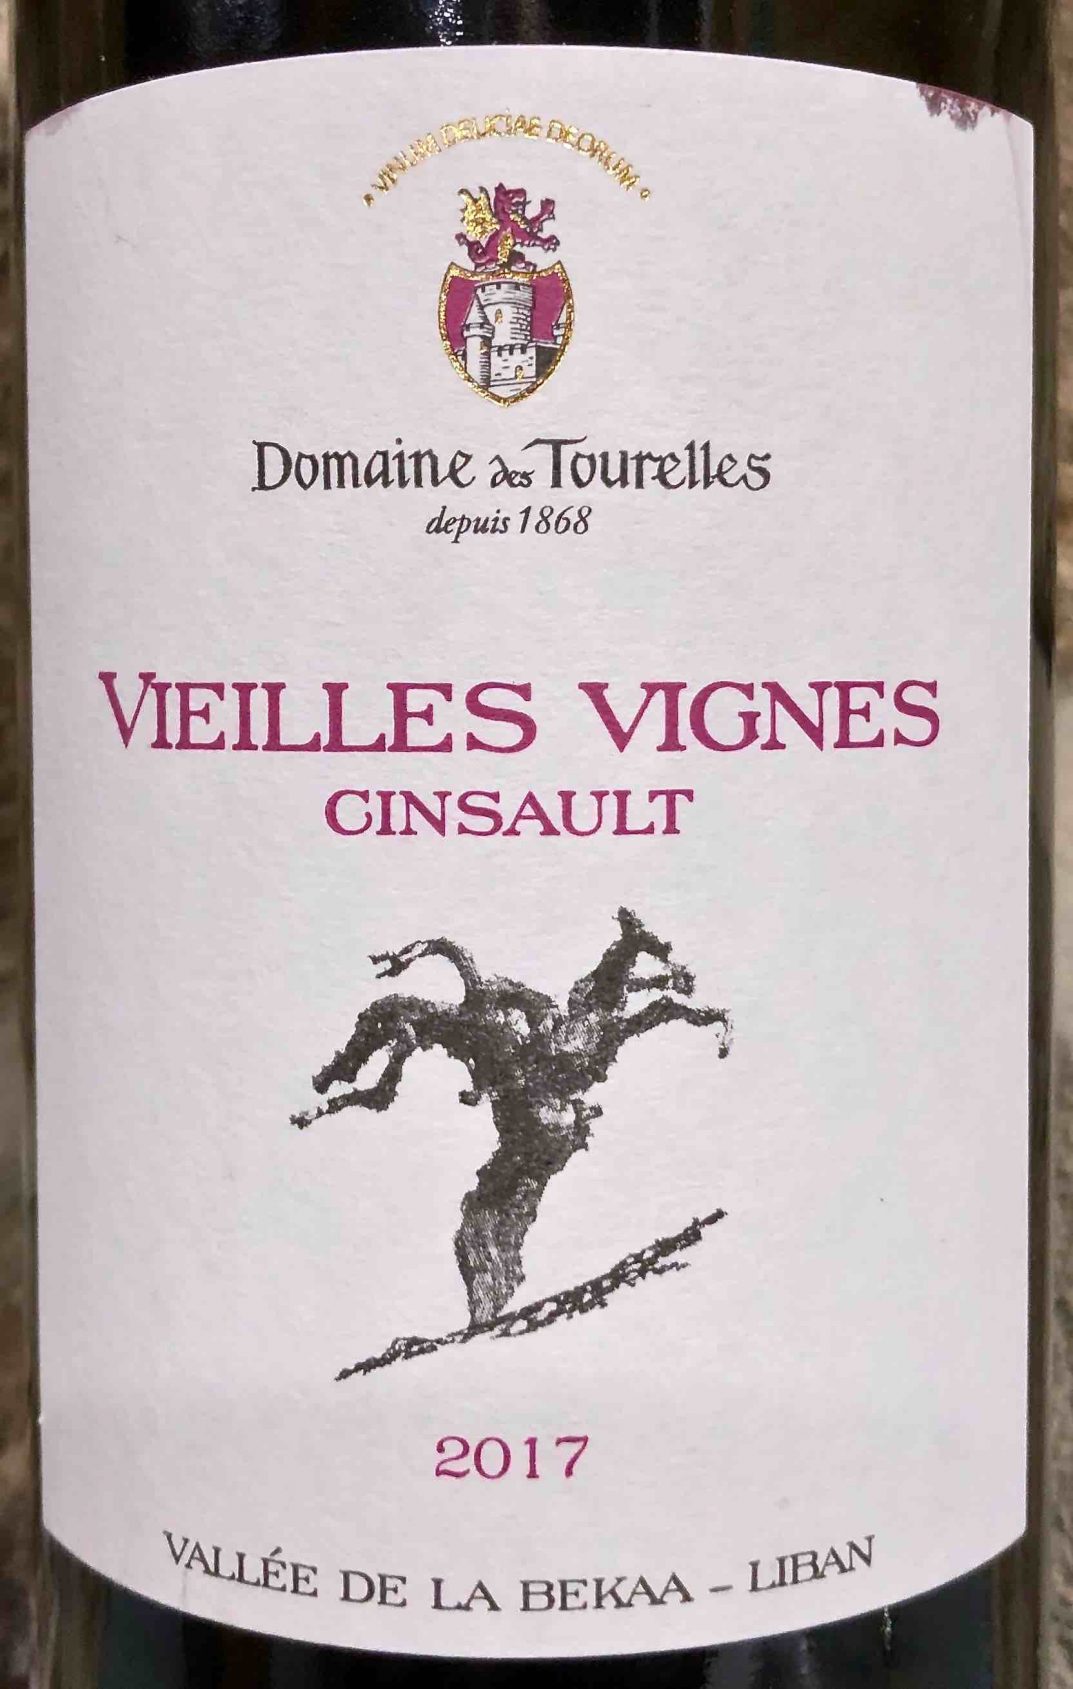 Domaine des Tourelles Cinsault VV